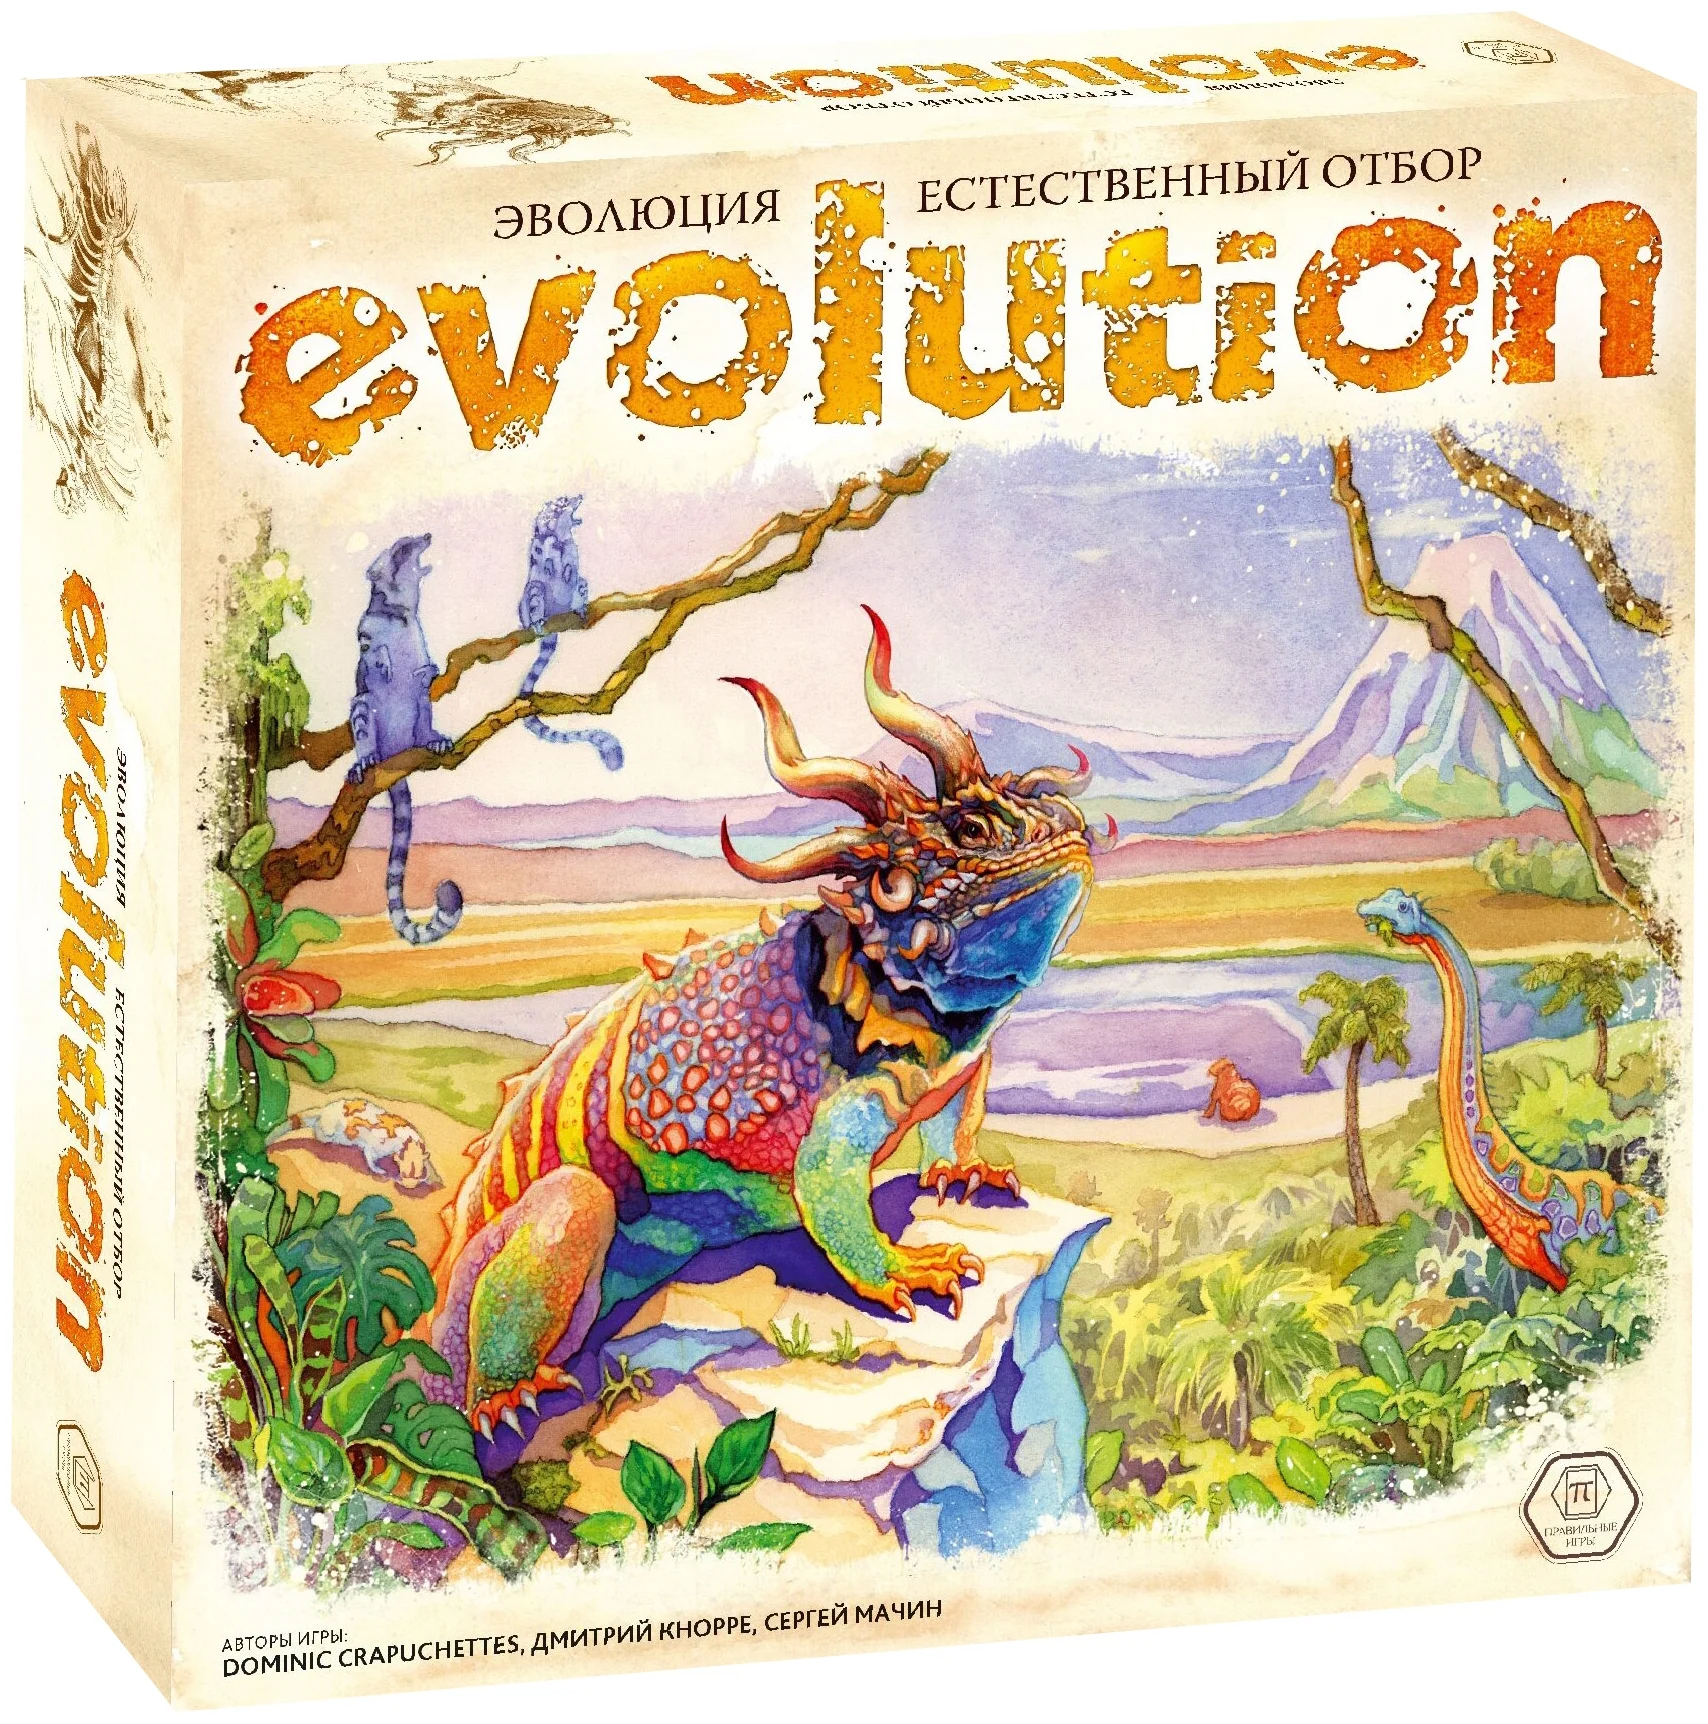 Правильные игры Настольная игра "Эволюция. Естественный отбор"